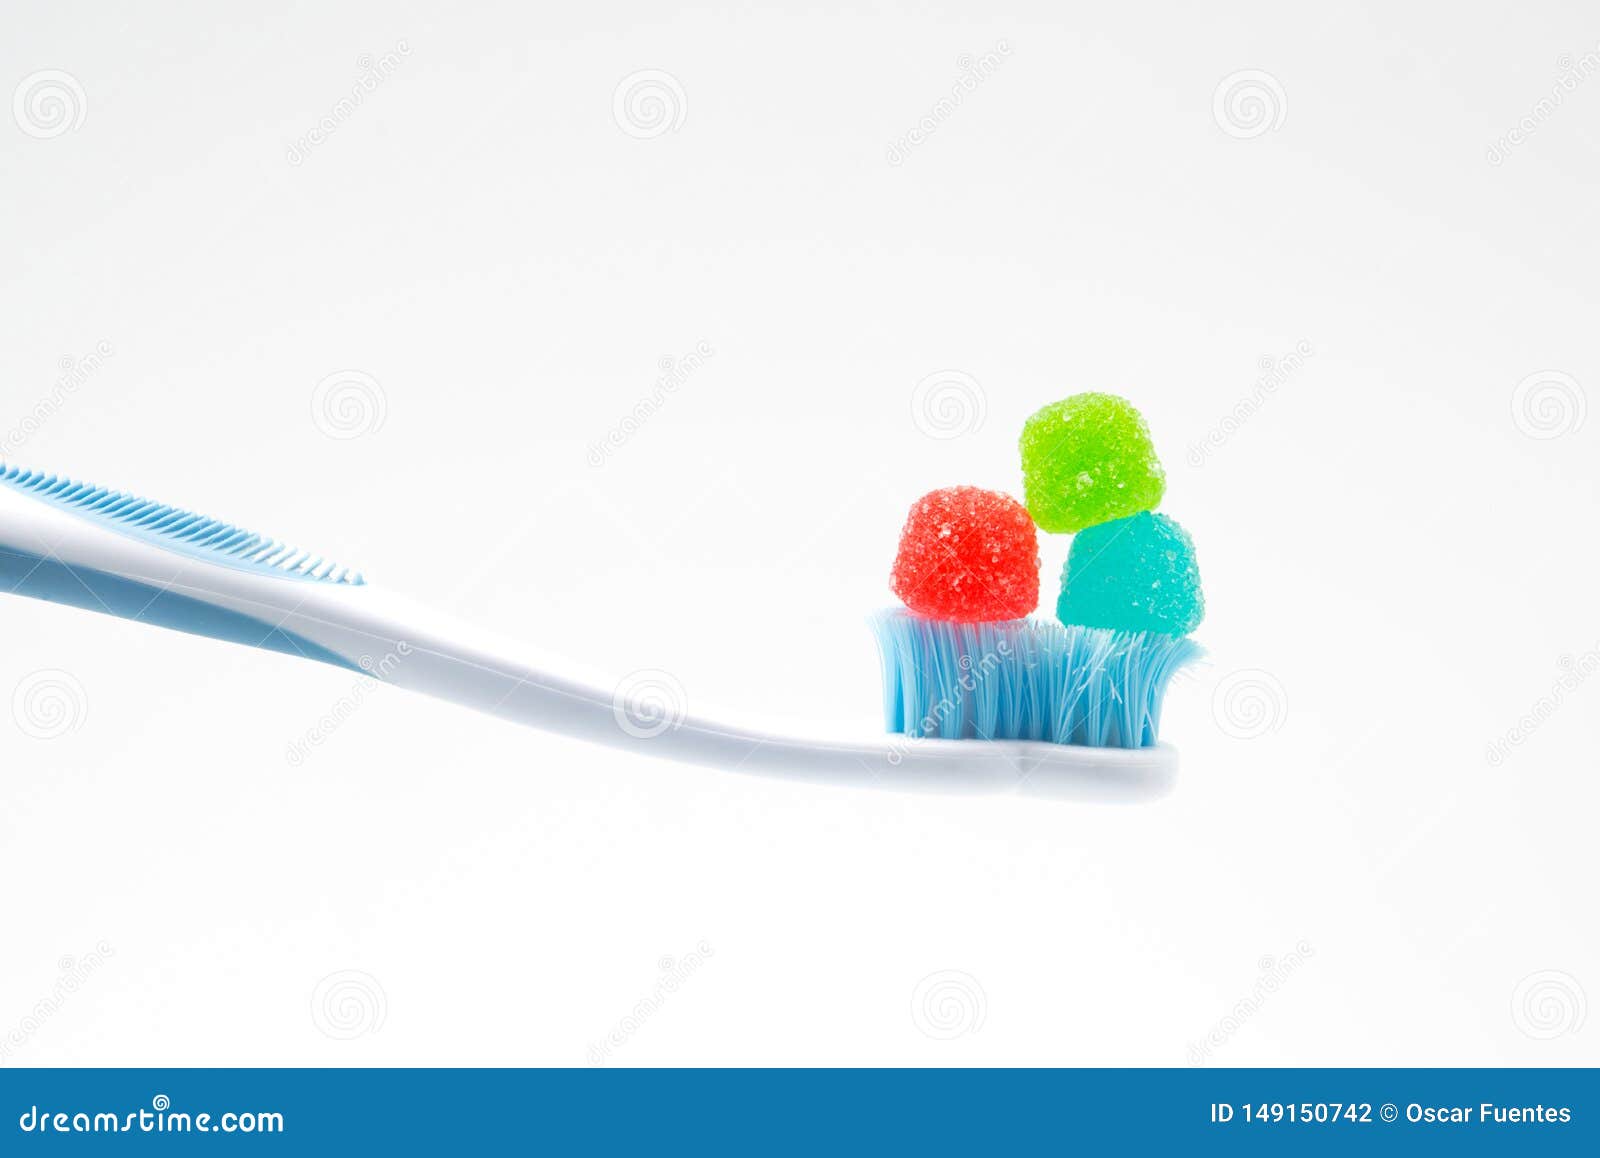 cepillo de dientes con dulces, concepto de salud y cuidado dental.